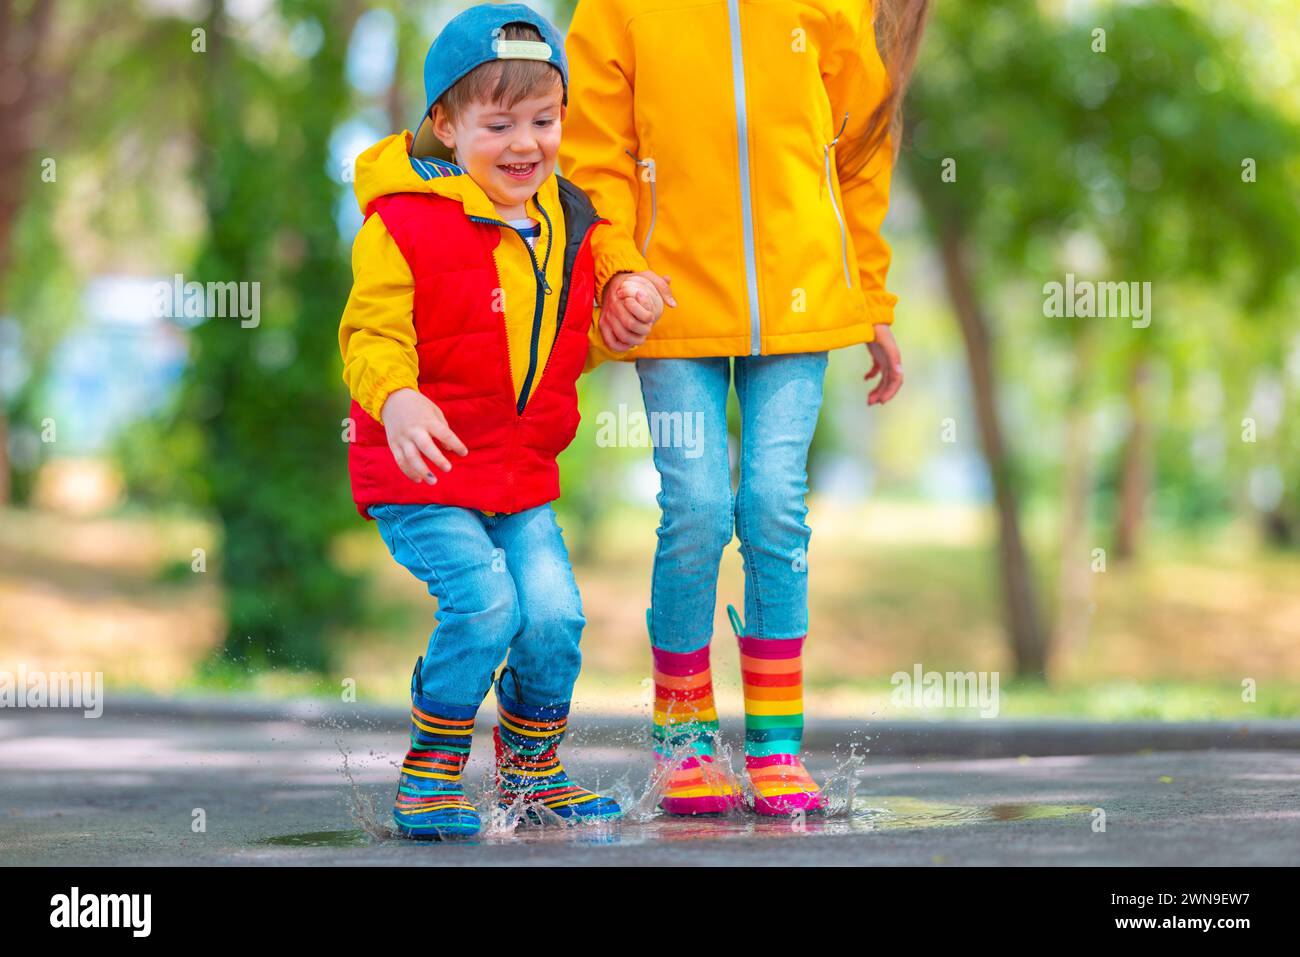 Glückliche Kinder Mädchen und Junge mit Regenschirm und farbigen Gummistiefeln spielen draußen und springen in schmutzigen regnerischen Pfützen Stockfoto